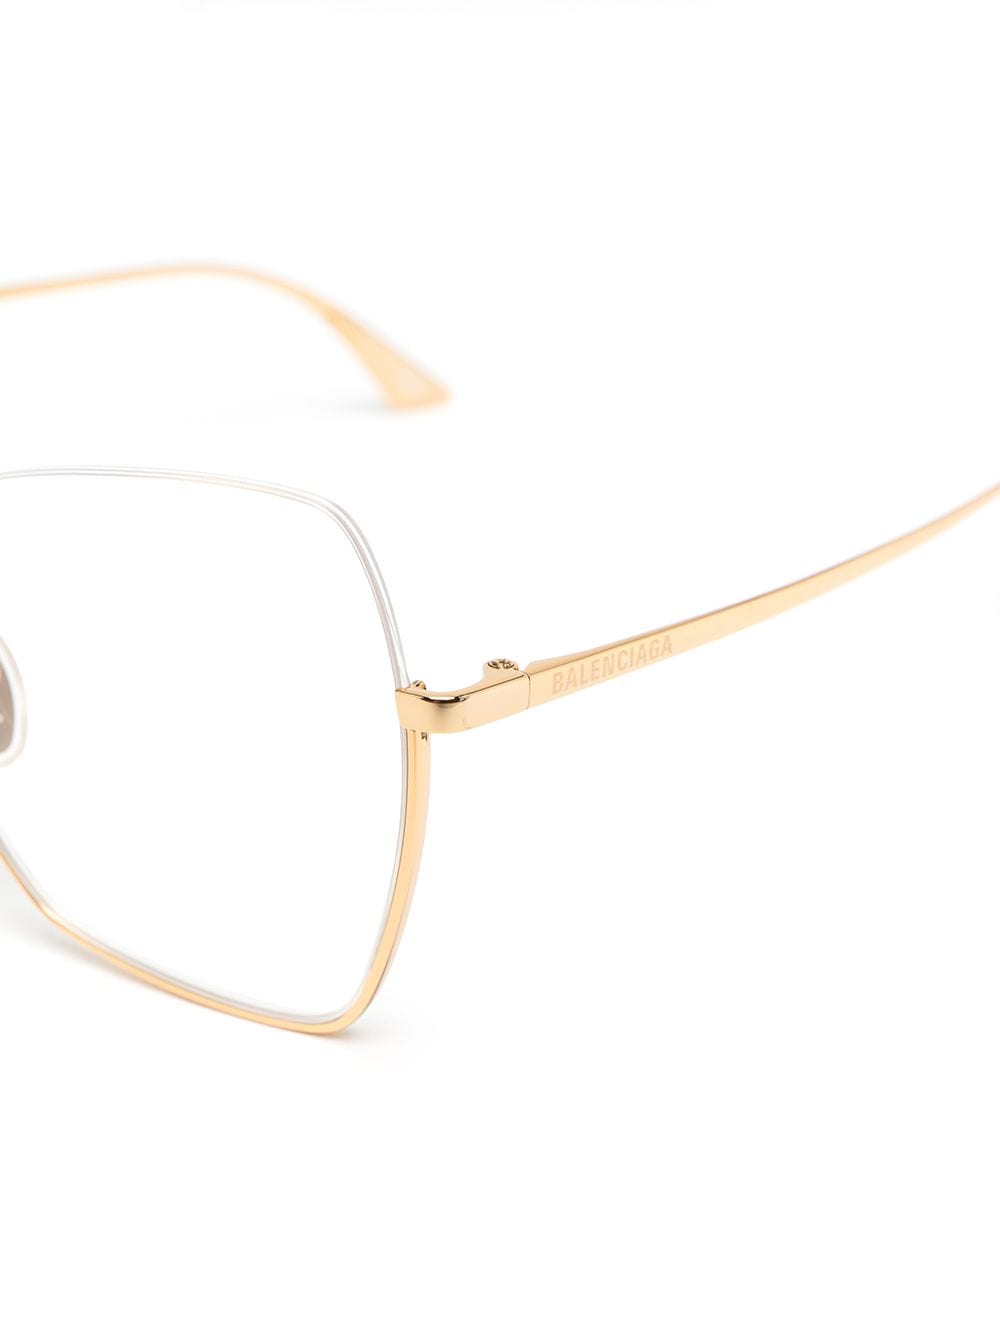 фото Balenciaga eyewear очки в массивной полуободковой оправе